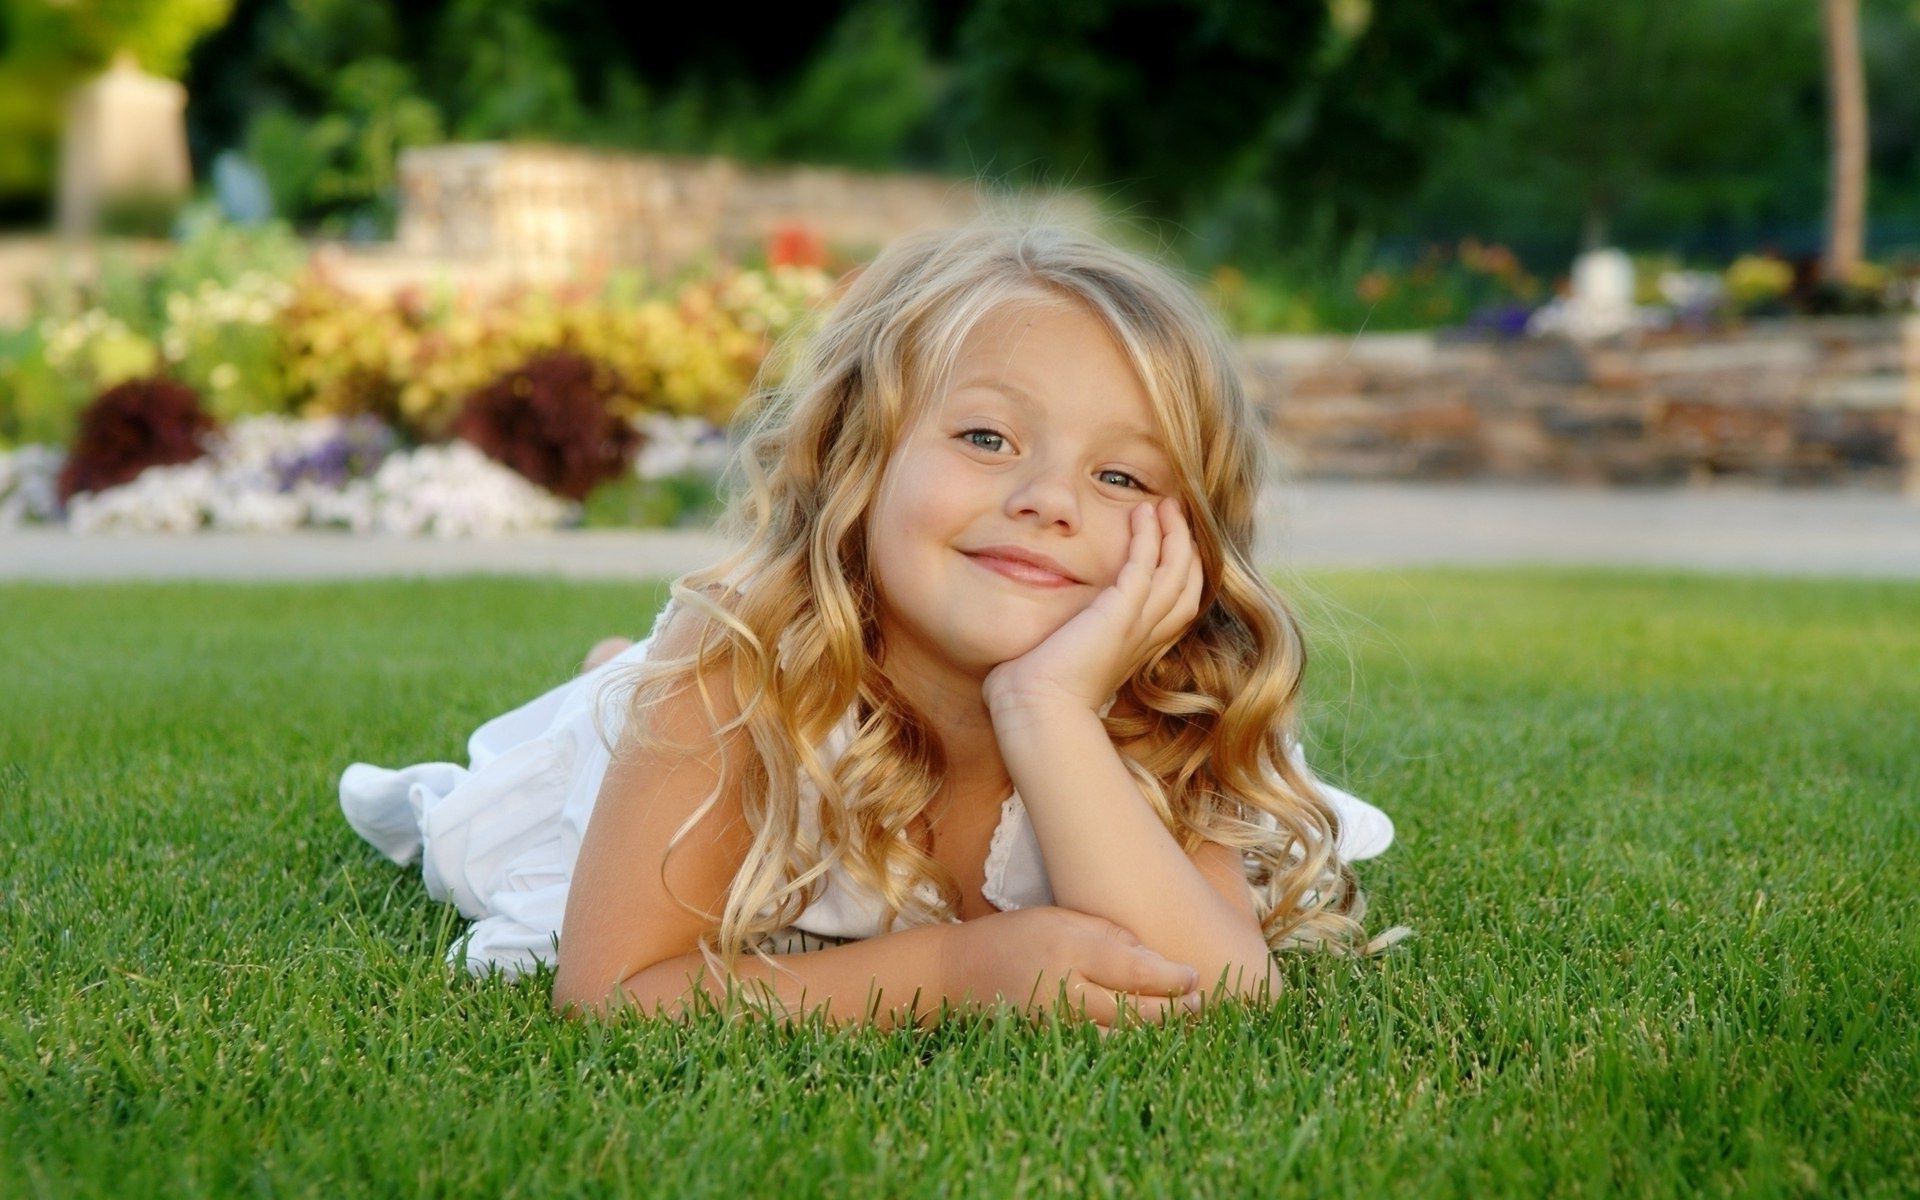 дети на природе трава природа лето ребенок парк газон милые сенокос радость девушка удовольствие на открытом воздухе отдых беззаботно поле счастье улыбка